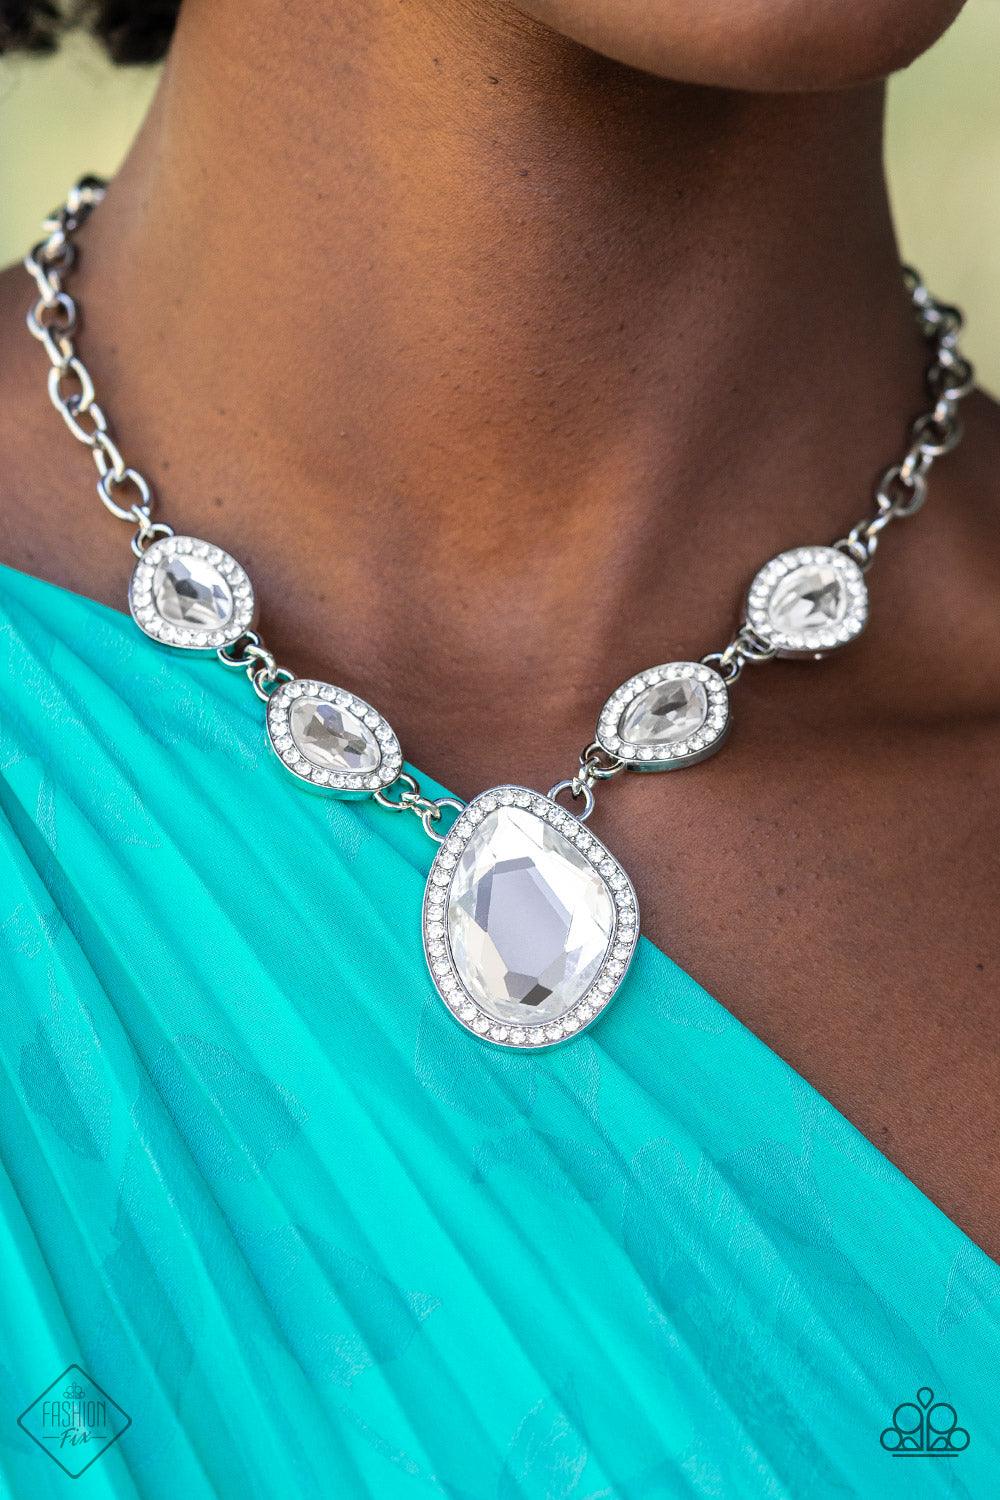 Fiercely 5th Avenue - Fashion Fix July 2022 - Jewelry by Bretta - Jewelry by Bretta